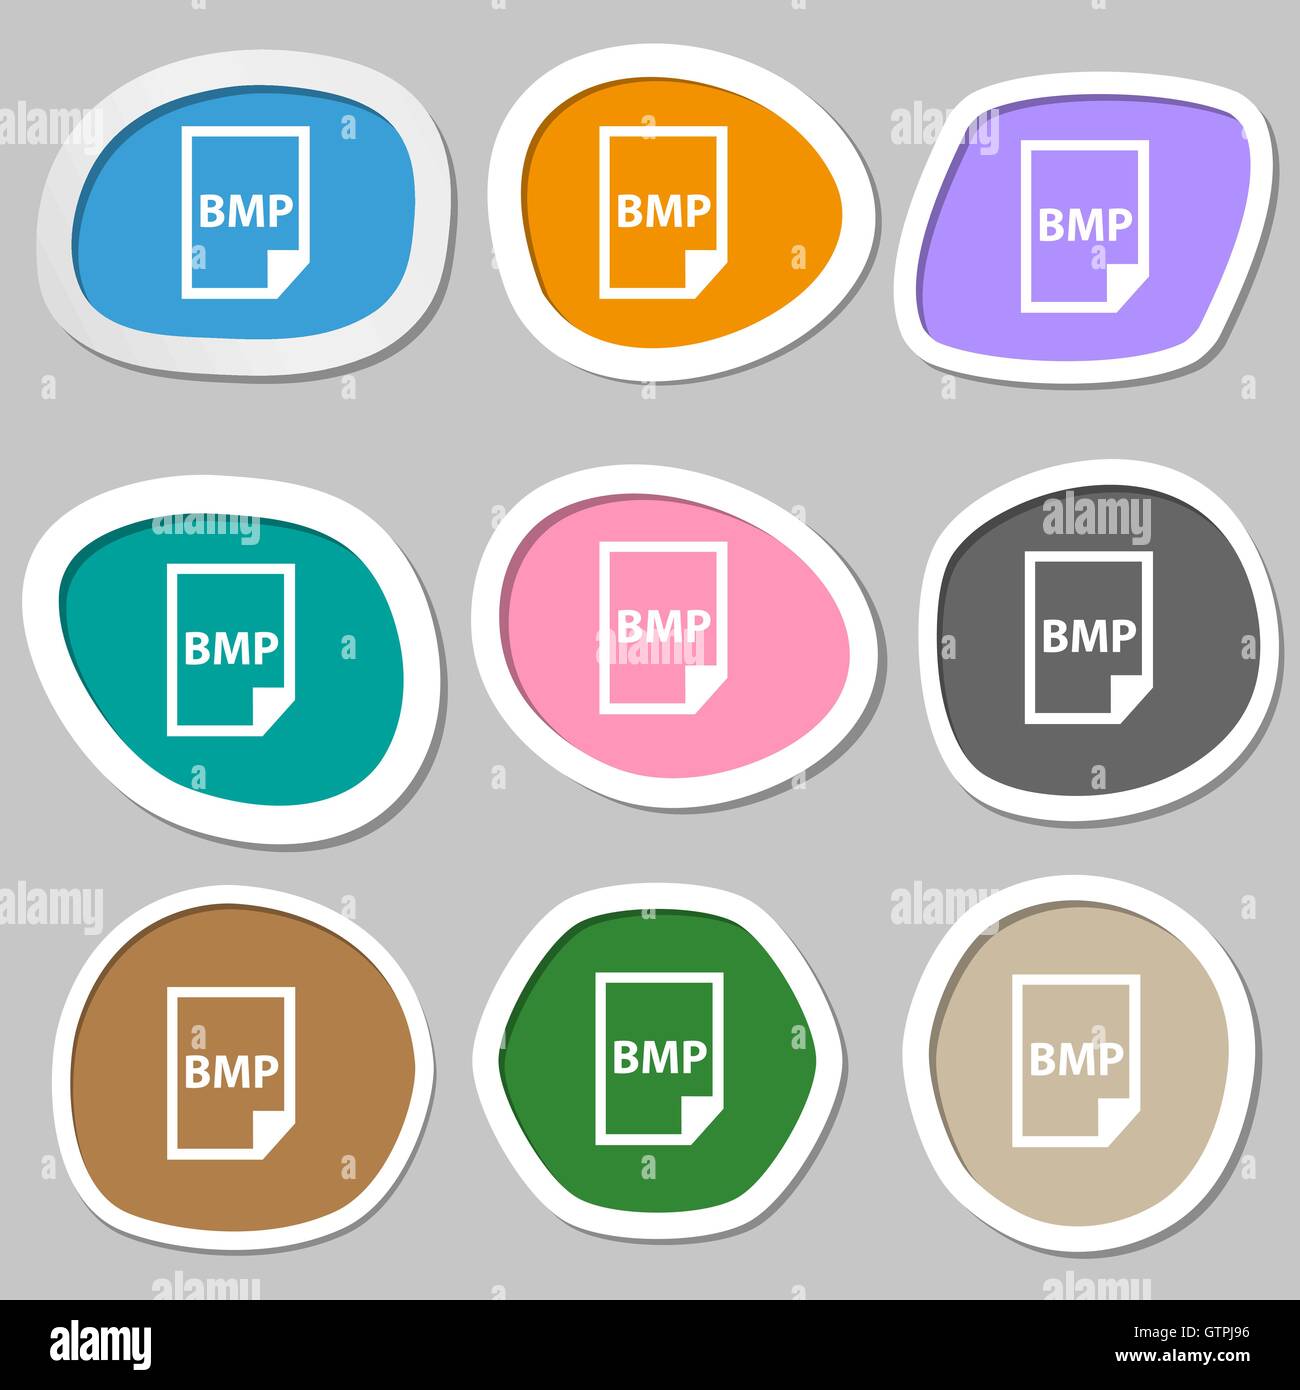 BMP Icon symbols. Multicolored paper stickers. Vector Stock Vector